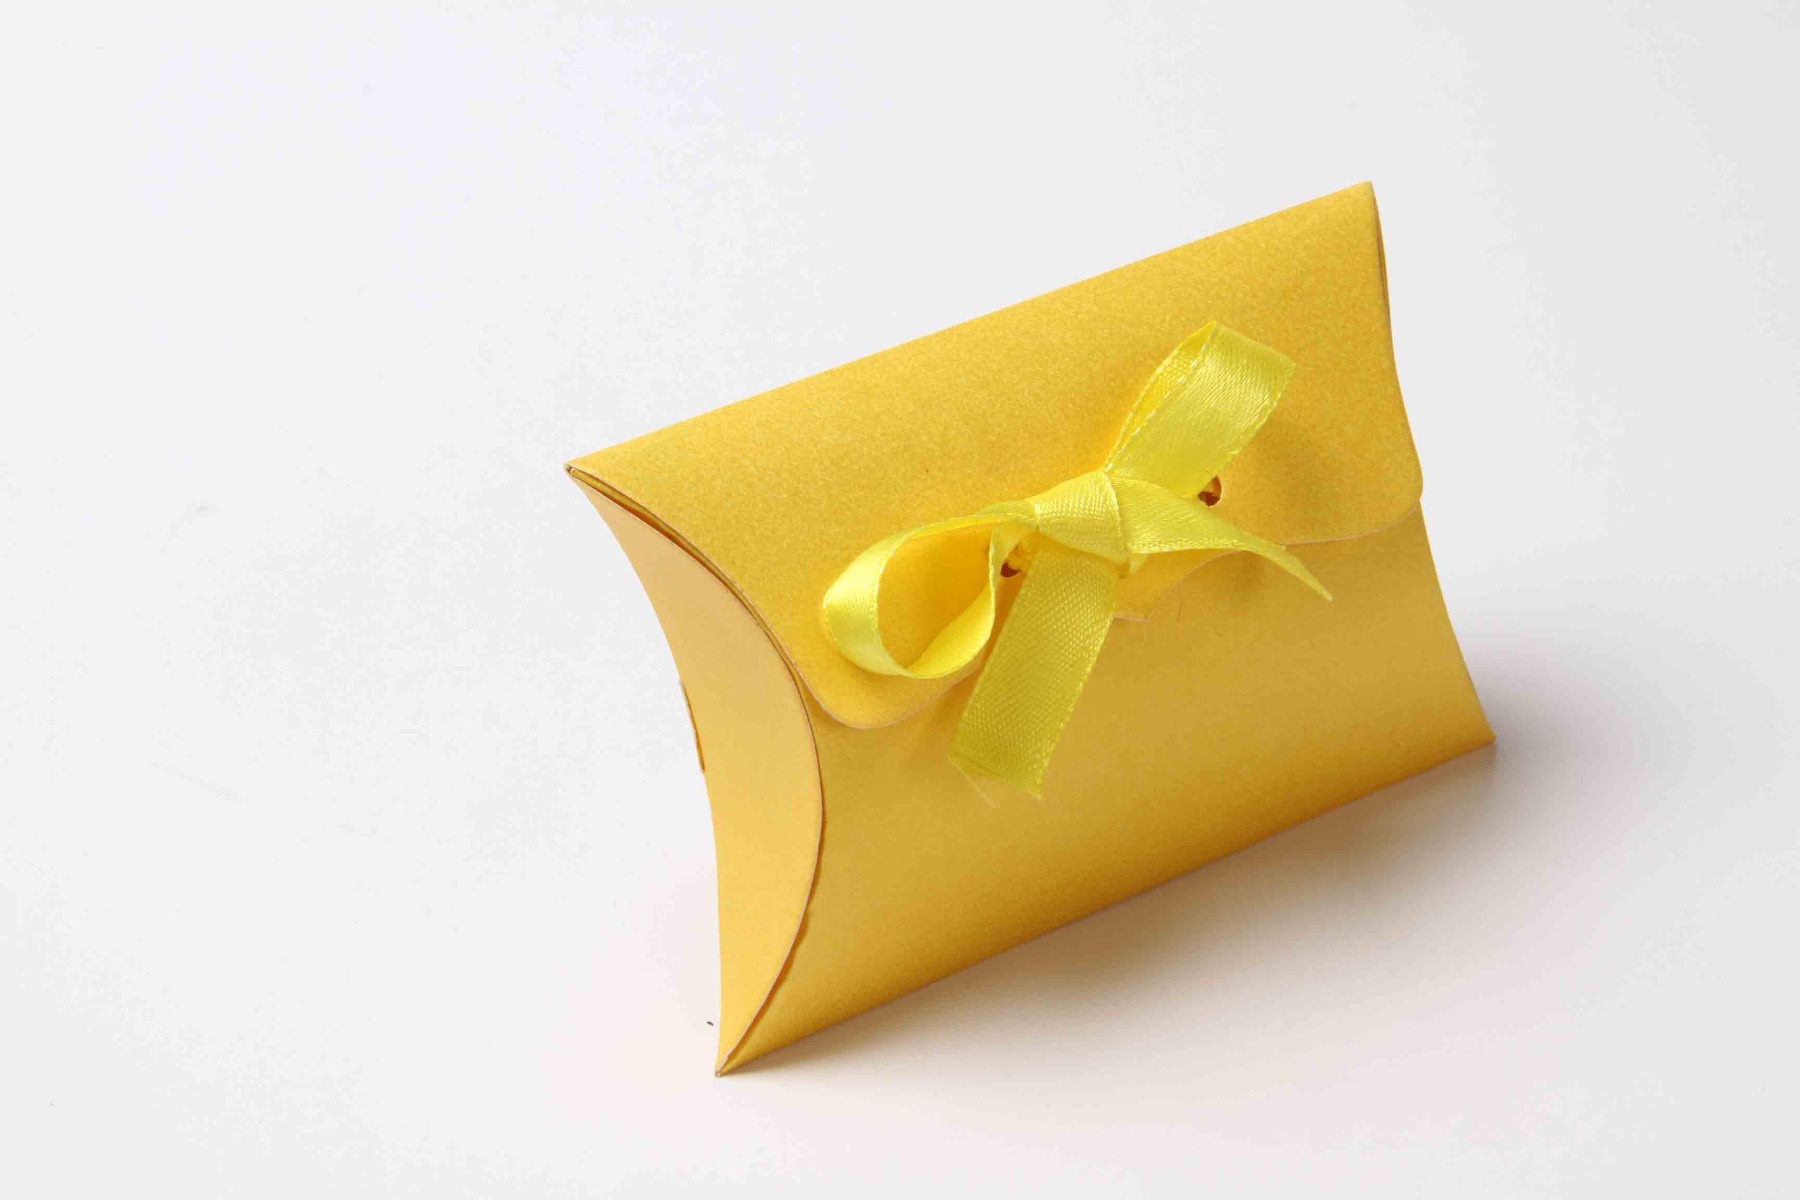 Pillow Favor Box No 9 - Yellow-8676